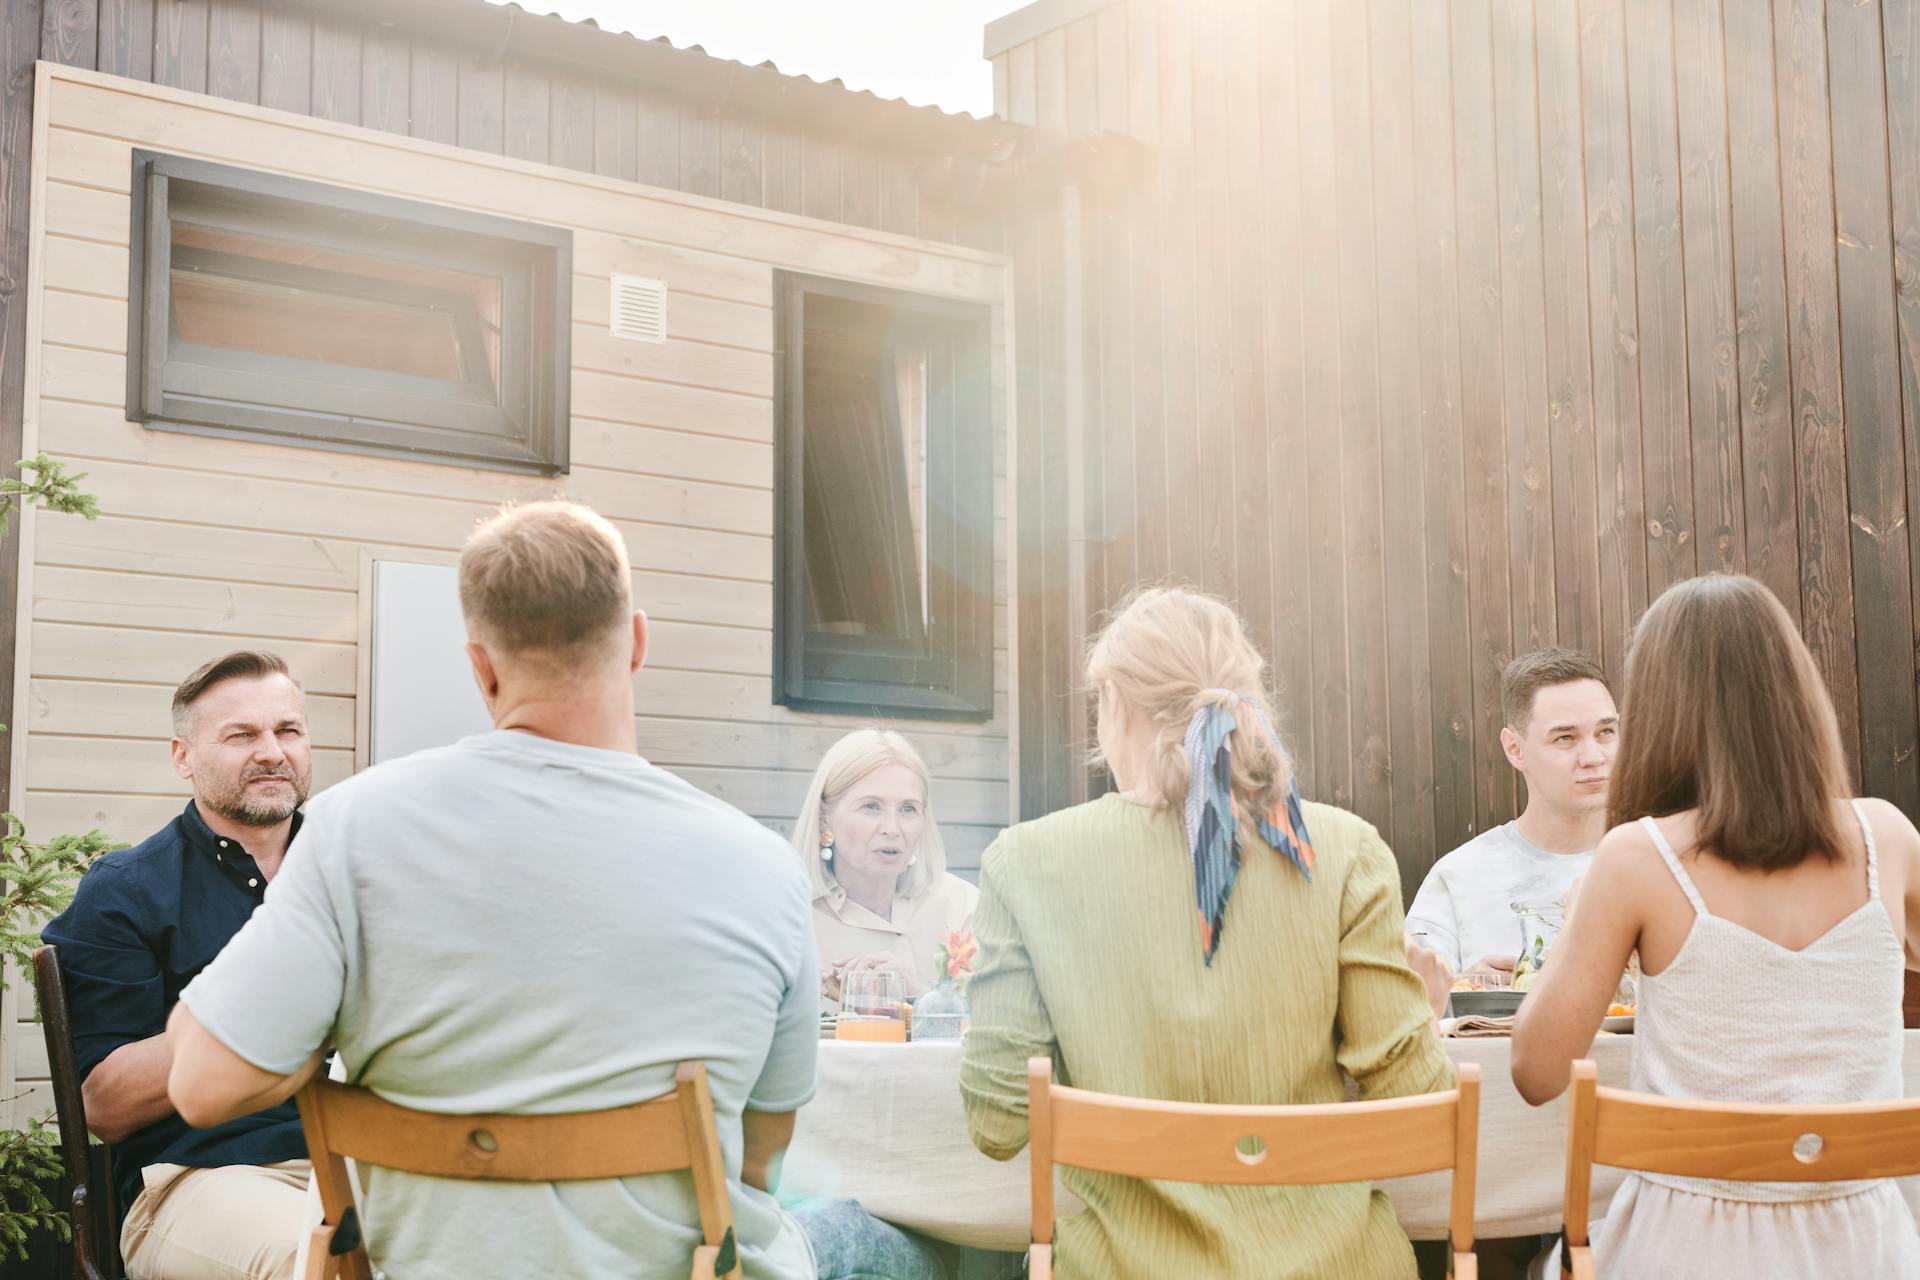 Una familia cenando en su patio trasero | Fuente: Pexels